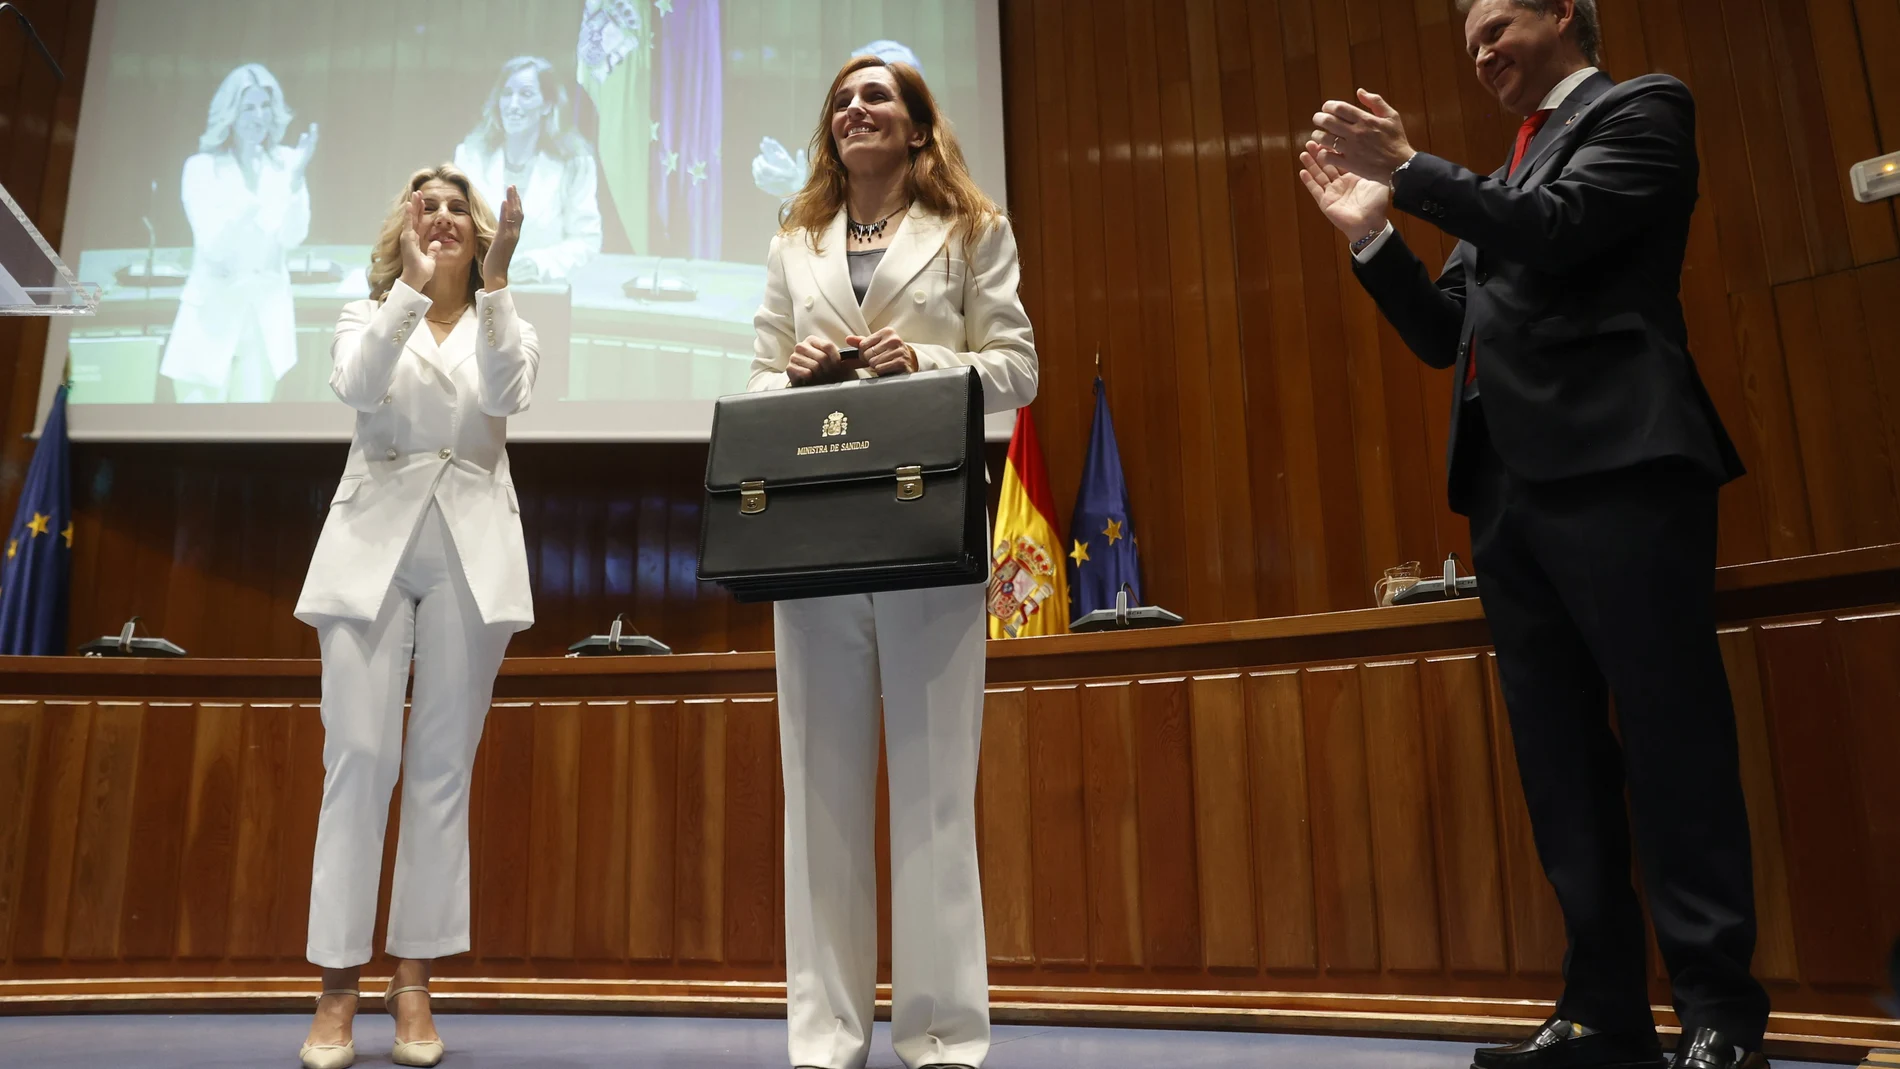 La nueva ministra de Sanidad, Mónica García (c), acompañada de la vicepresidenta segunda Yolanda Díaz (i), recibe su nueva cartera a manos del ex ministro José Miñones, durante la toma de posesión de su cargo, este martes en Madrid.